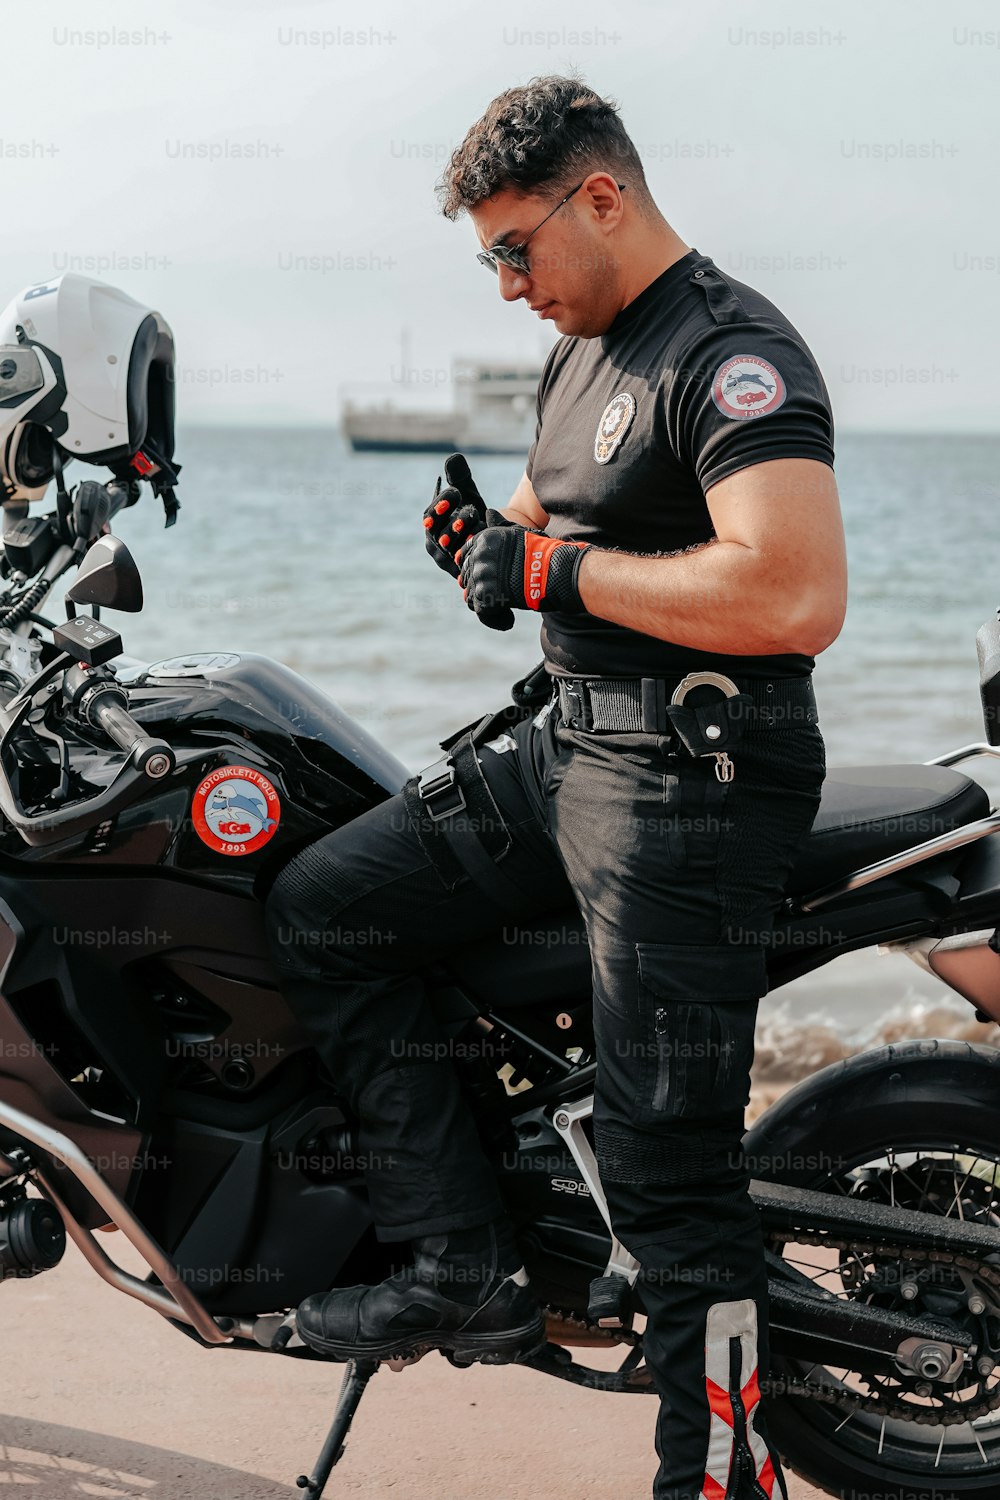 Un homme assis sur une moto regardant son téléphone portable